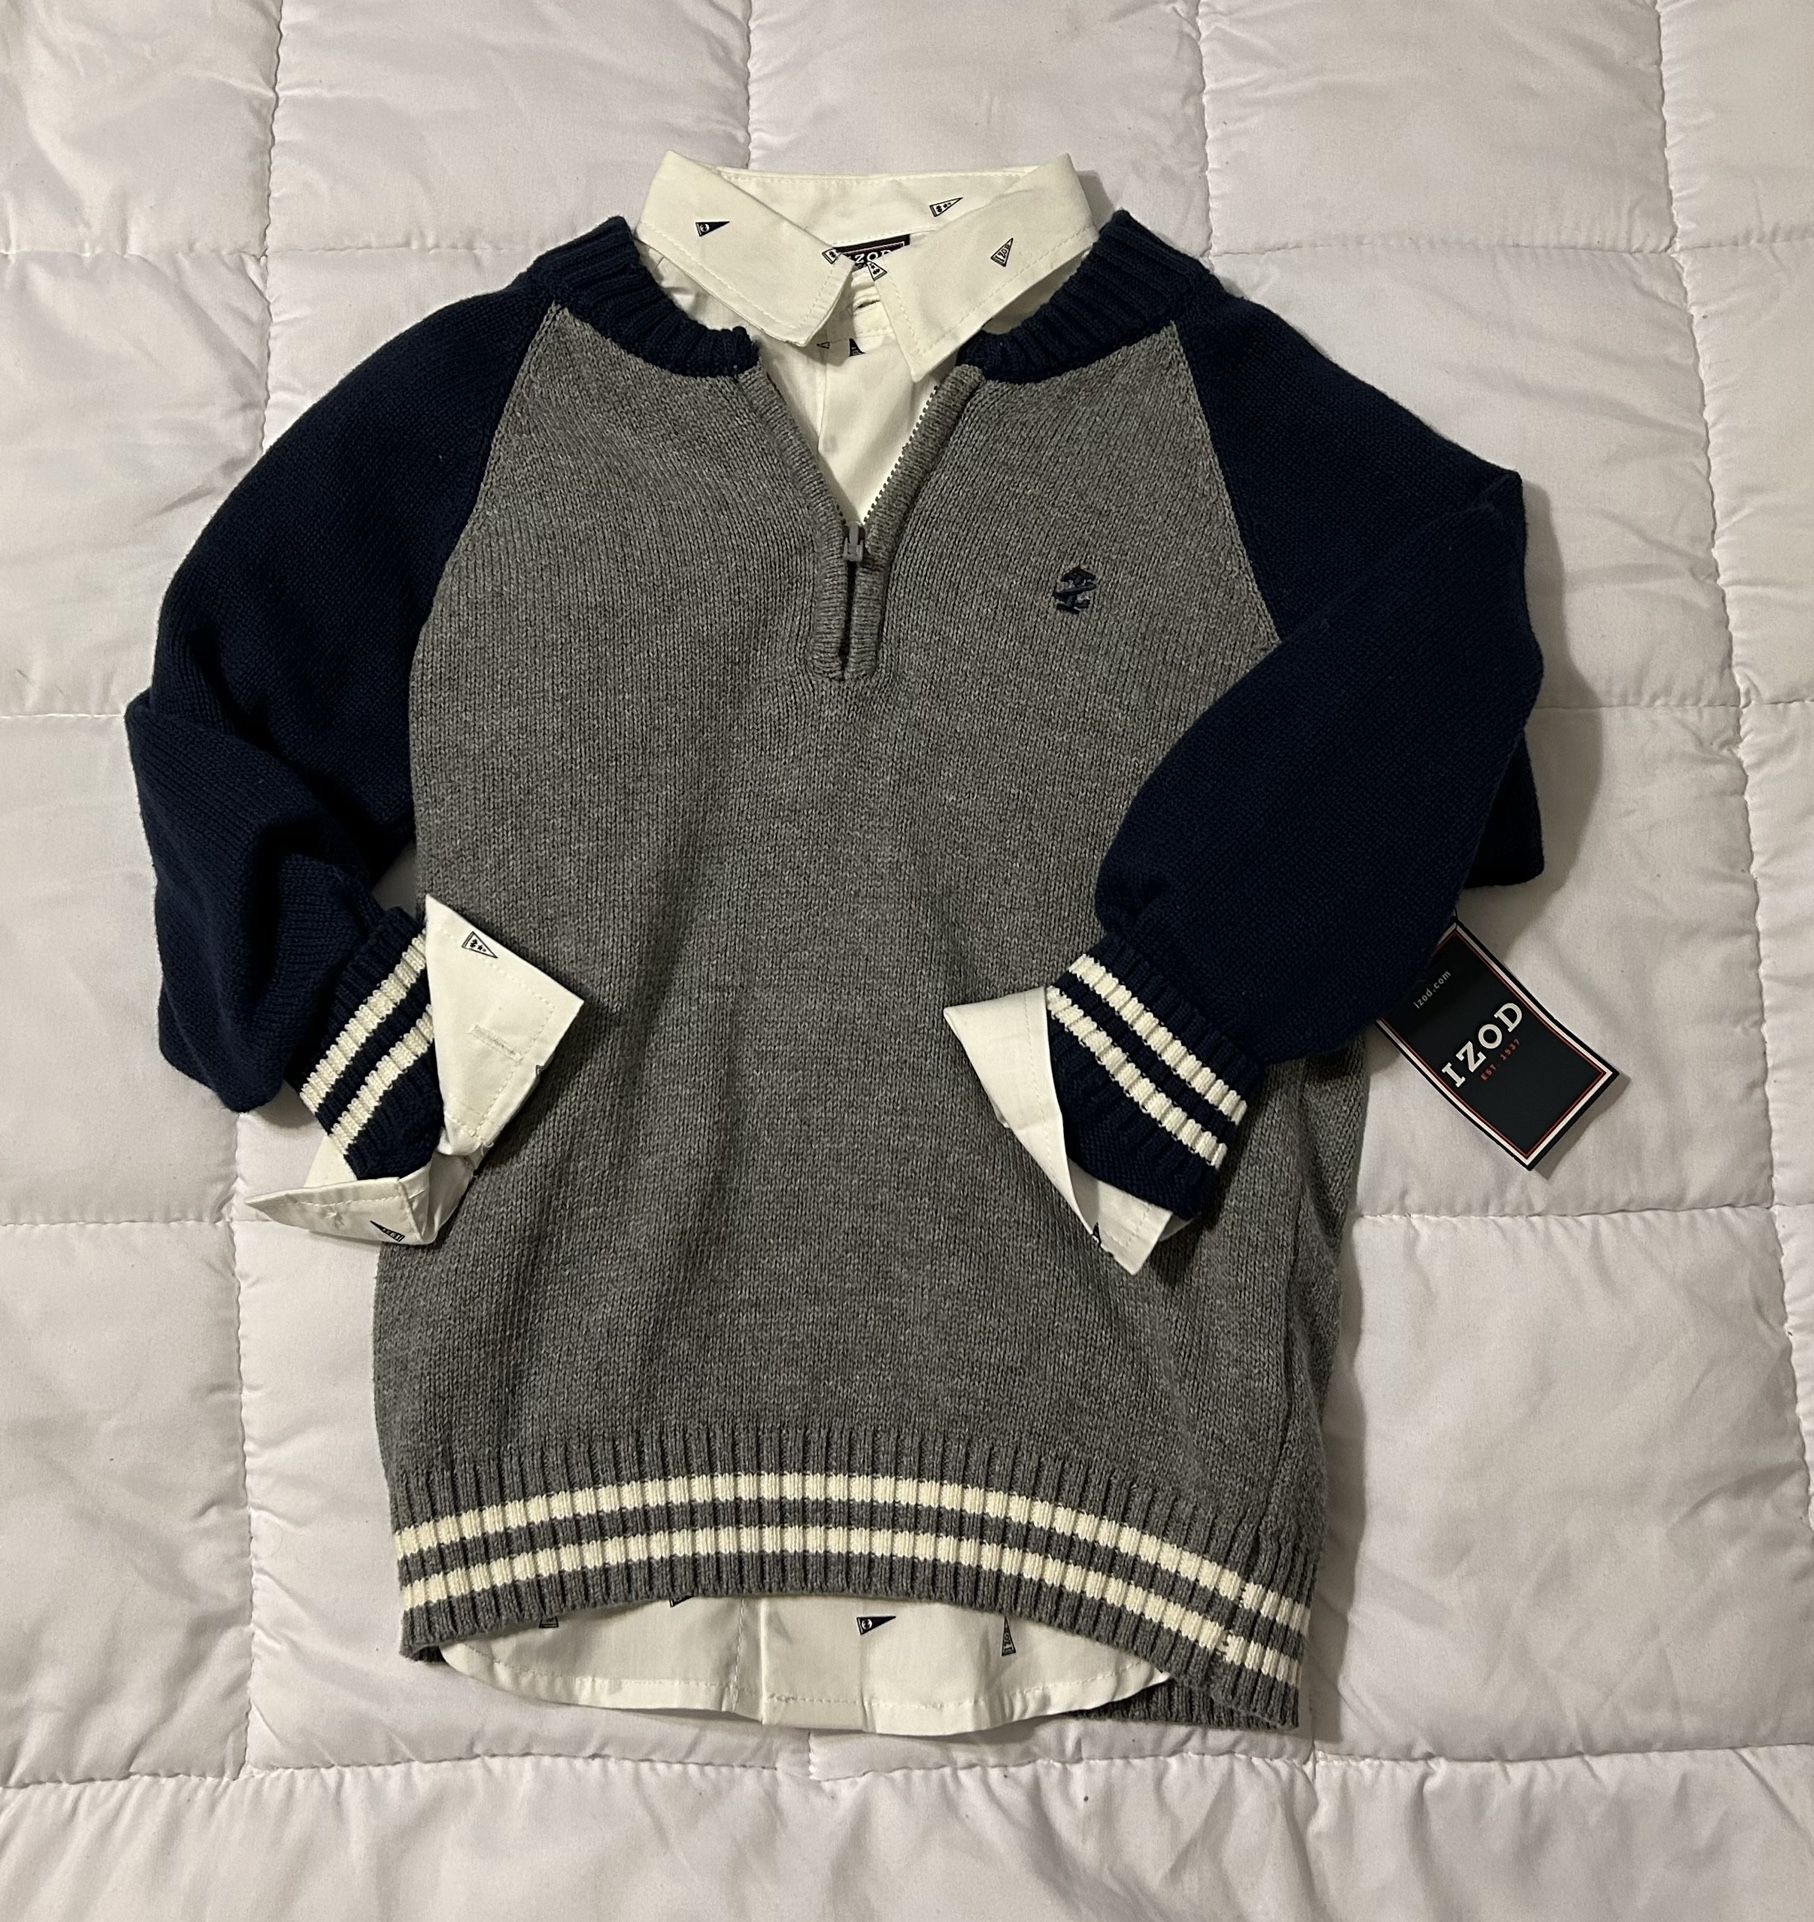 Sweater Vest w/Dress Shirt NWT Izod 2pc set Boy size XS(4)